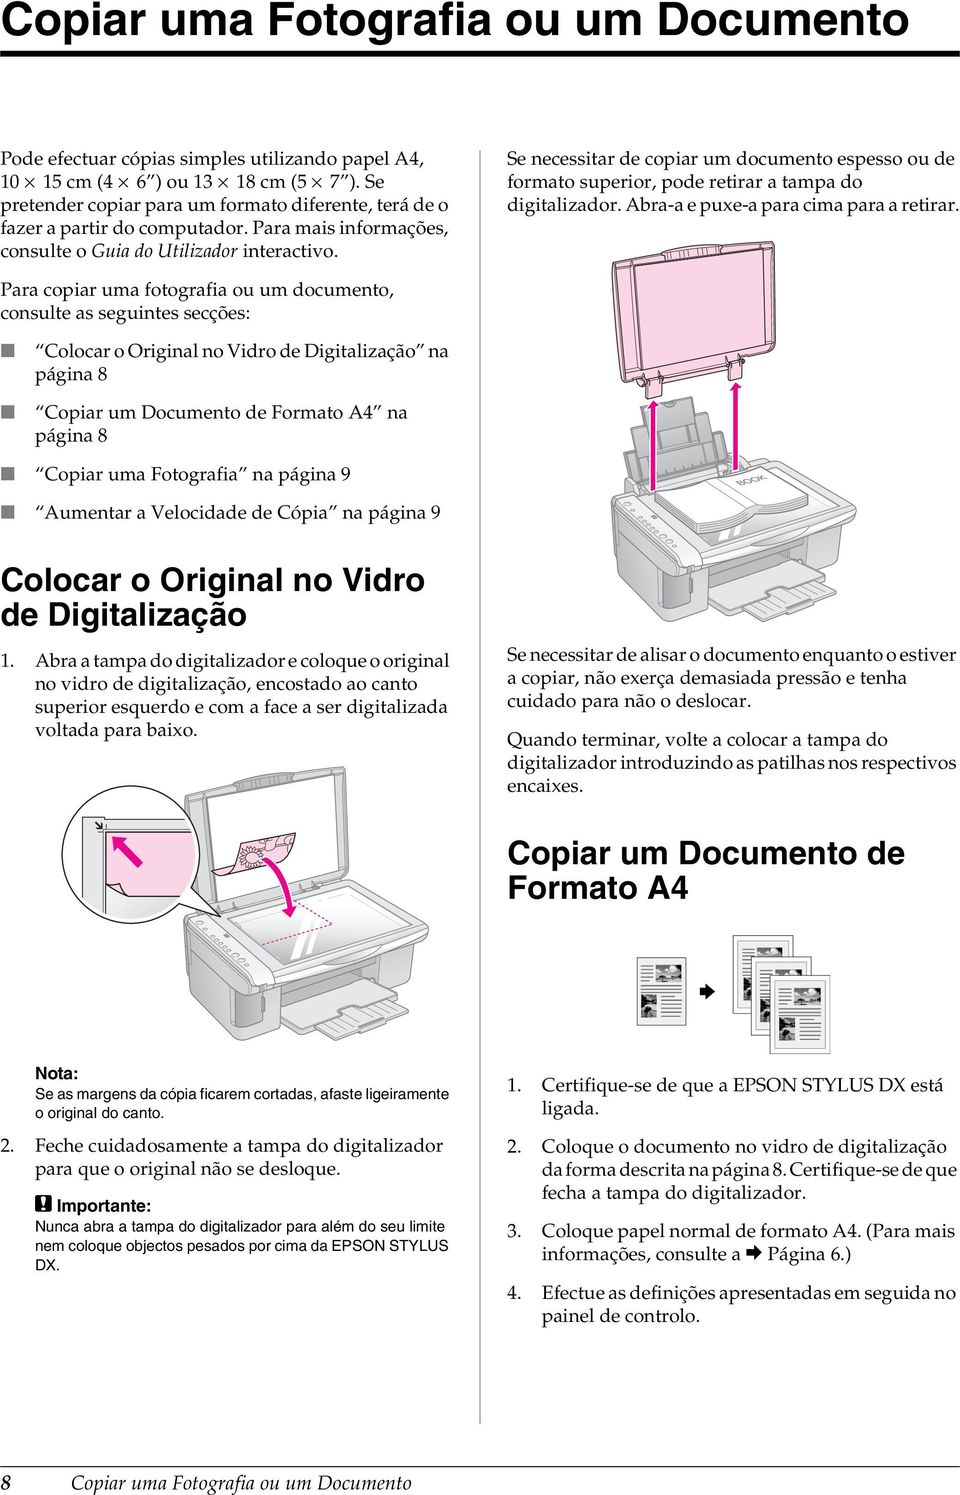 Se necessitar de copiar um documento espesso ou de formato superior, pode retirar a tampa do digitalizador. Abra-a e puxe-a para cima para a retirar.